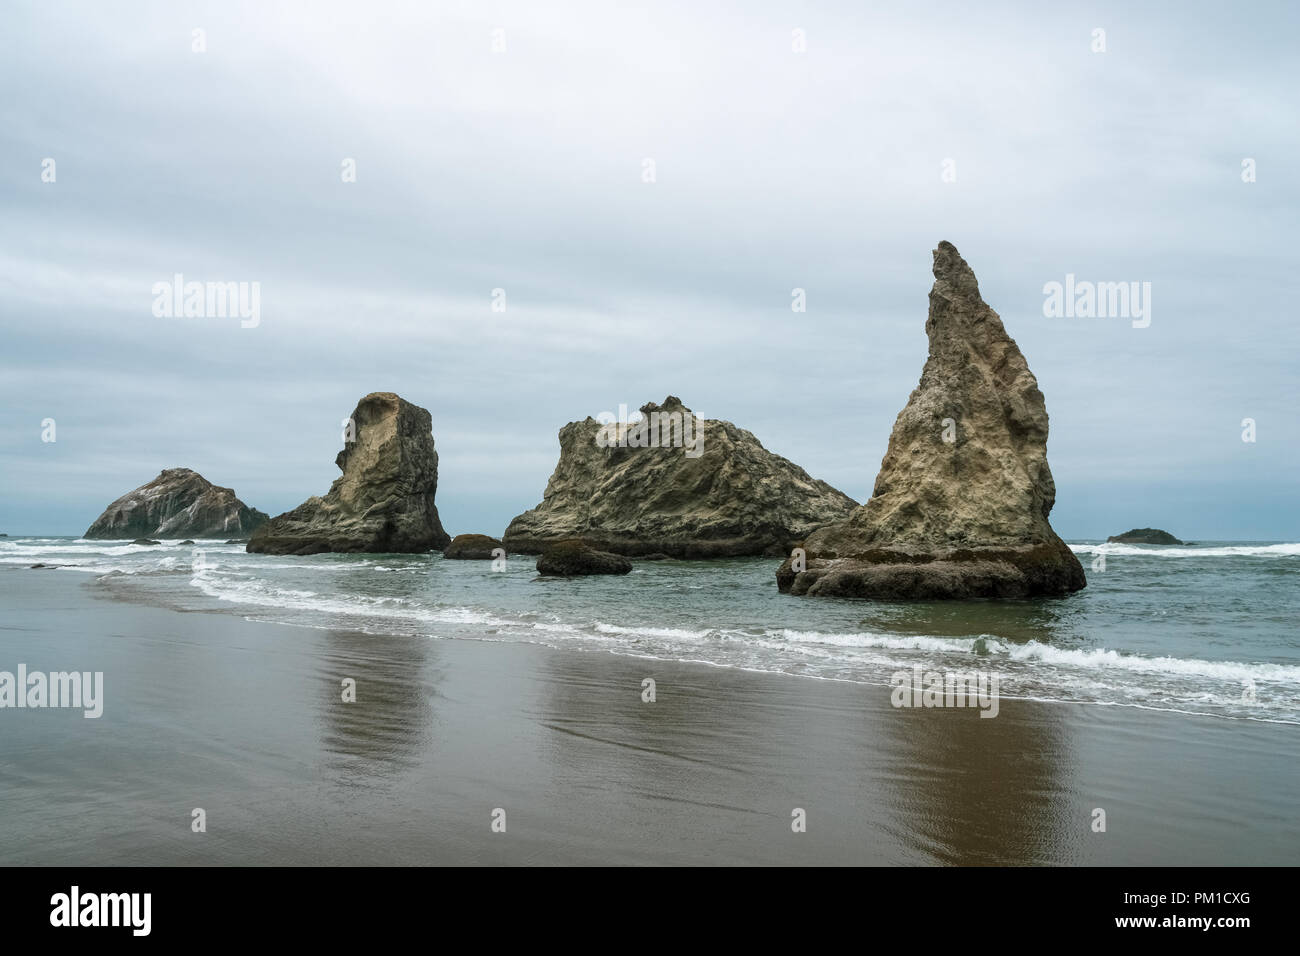 Bandon Beach sea stacks or rocky outcrops on an overcast day, Oregon Coast, USA. Stock Photo